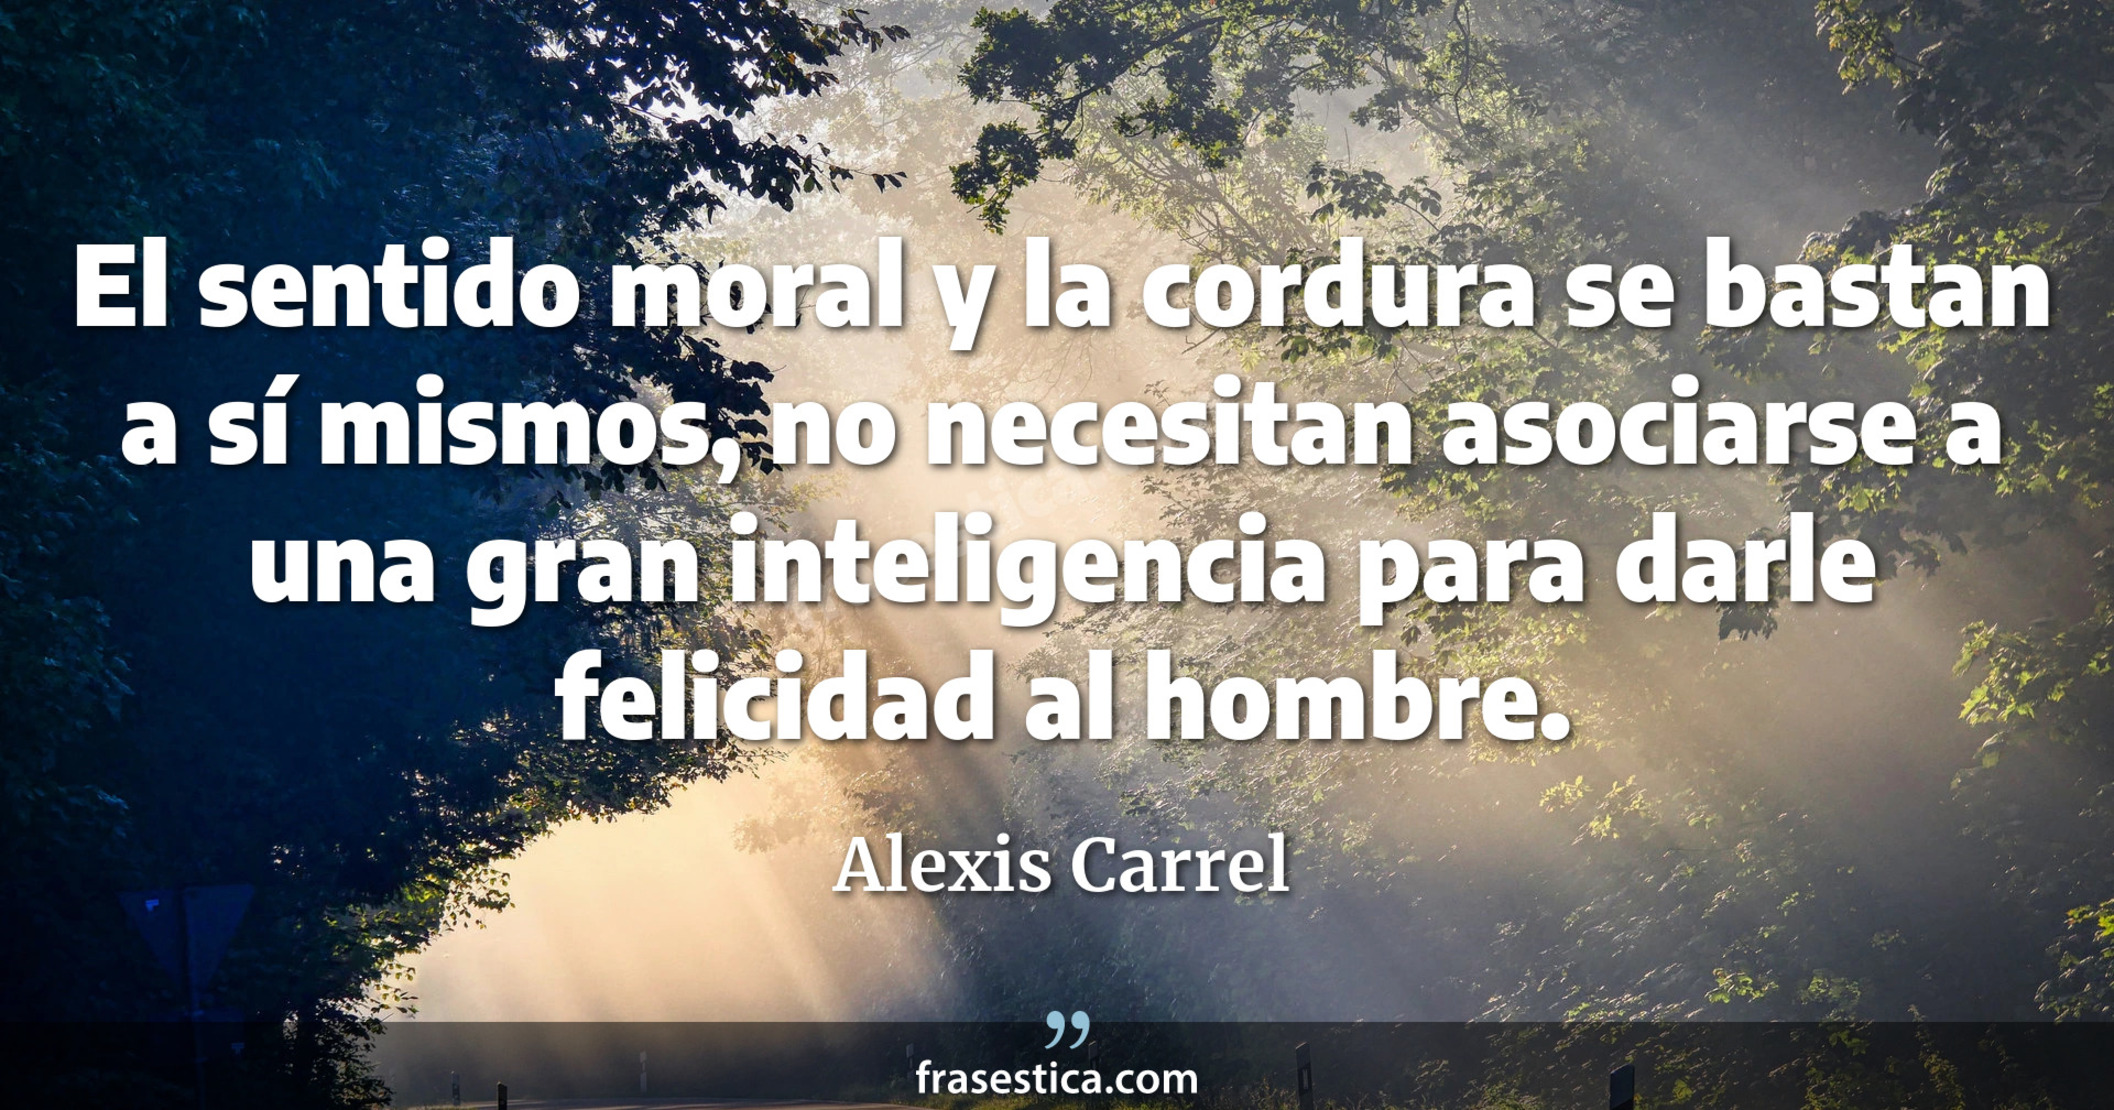 El sentido moral y la cordura se bastan a sí mismos, no necesitan asociarse a una gran inteligencia para darle felicidad al hombre. - Alexis Carrel